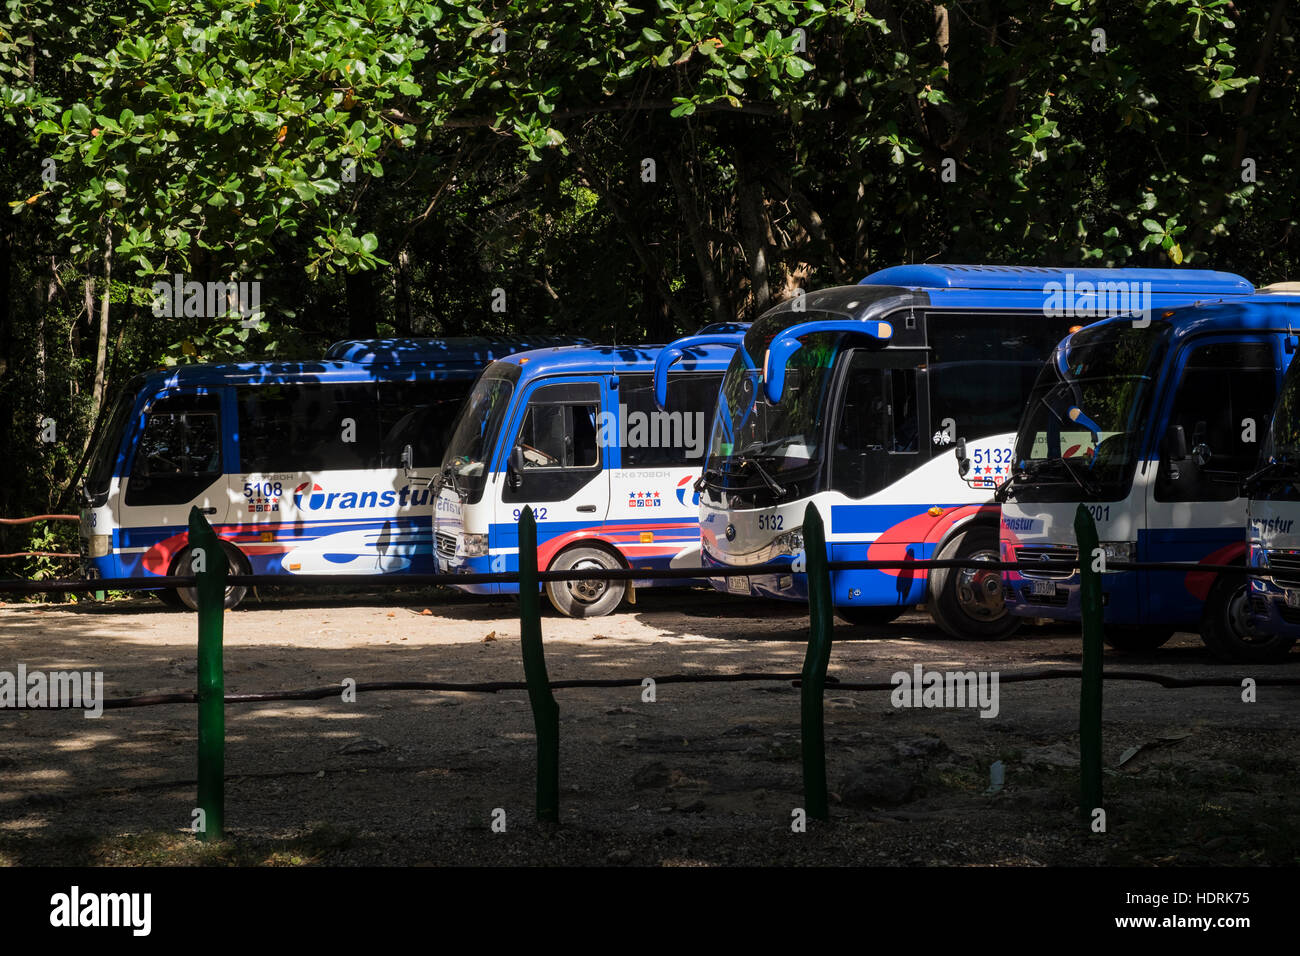 Transtour governo cubano azienda di pullman turistici parcheggiato in un parcheggio, Trinidad, Cuba Foto Stock